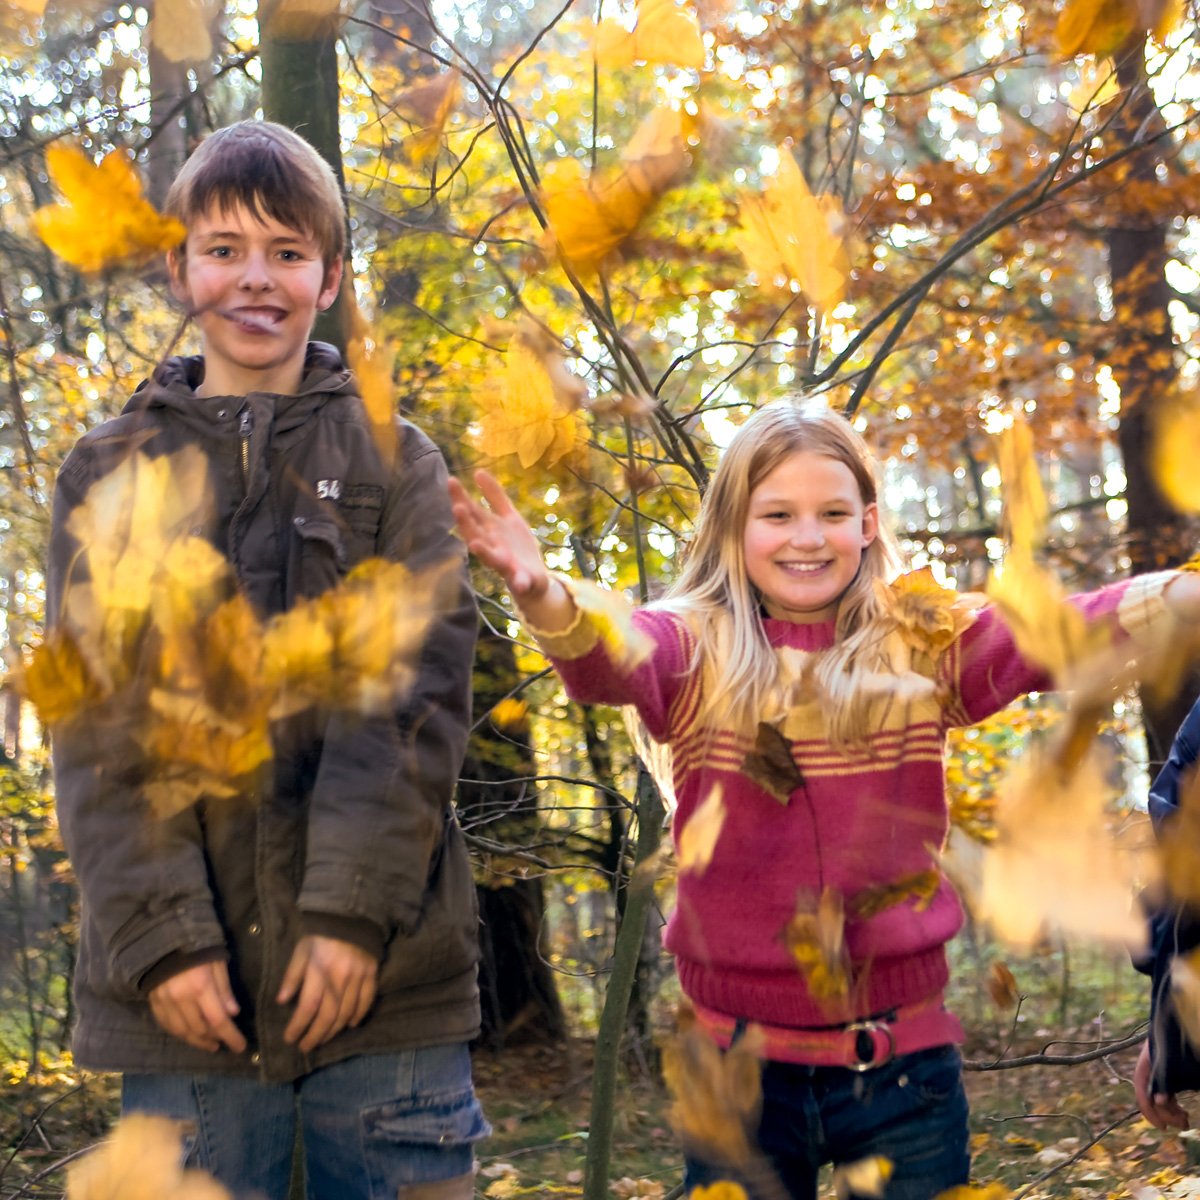 Kinder der Tagesgruppe spielen fröhlich im Laub und werfen Blätter in die Luft